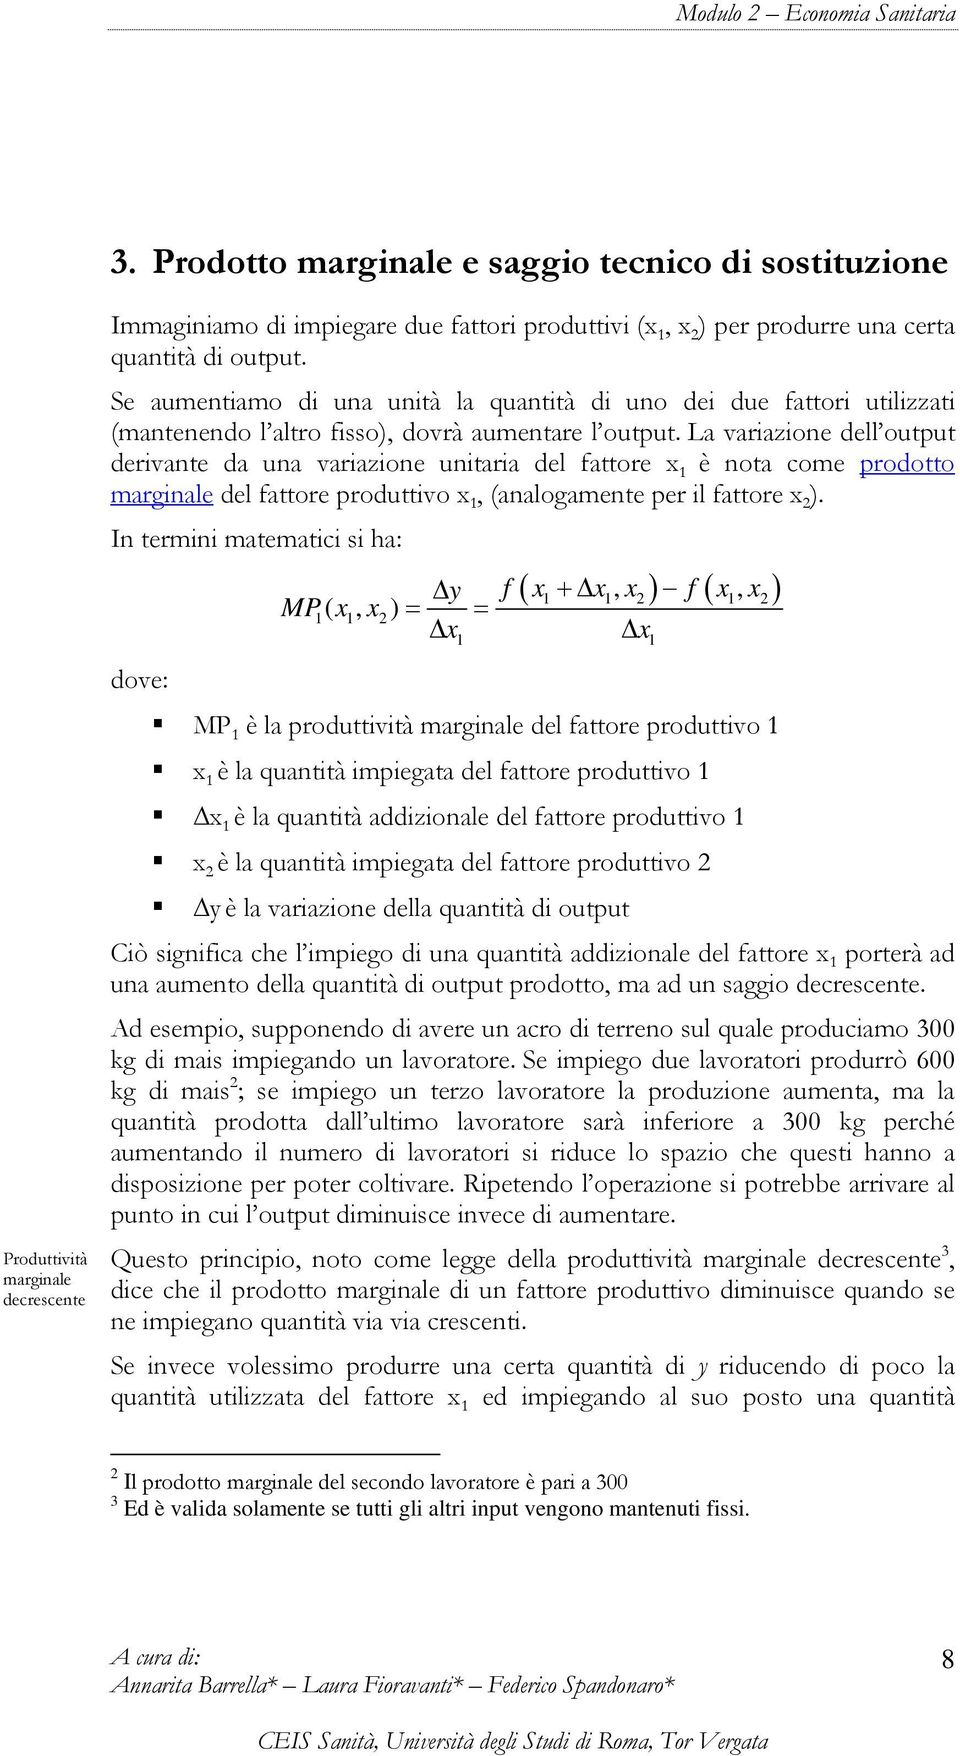 La variazione dell output derivante da una variazione unitaria del fattore x 1 è nota come prodotto marginale del fattore produttivo x 1, (analogamente per il fattore x 2 ).